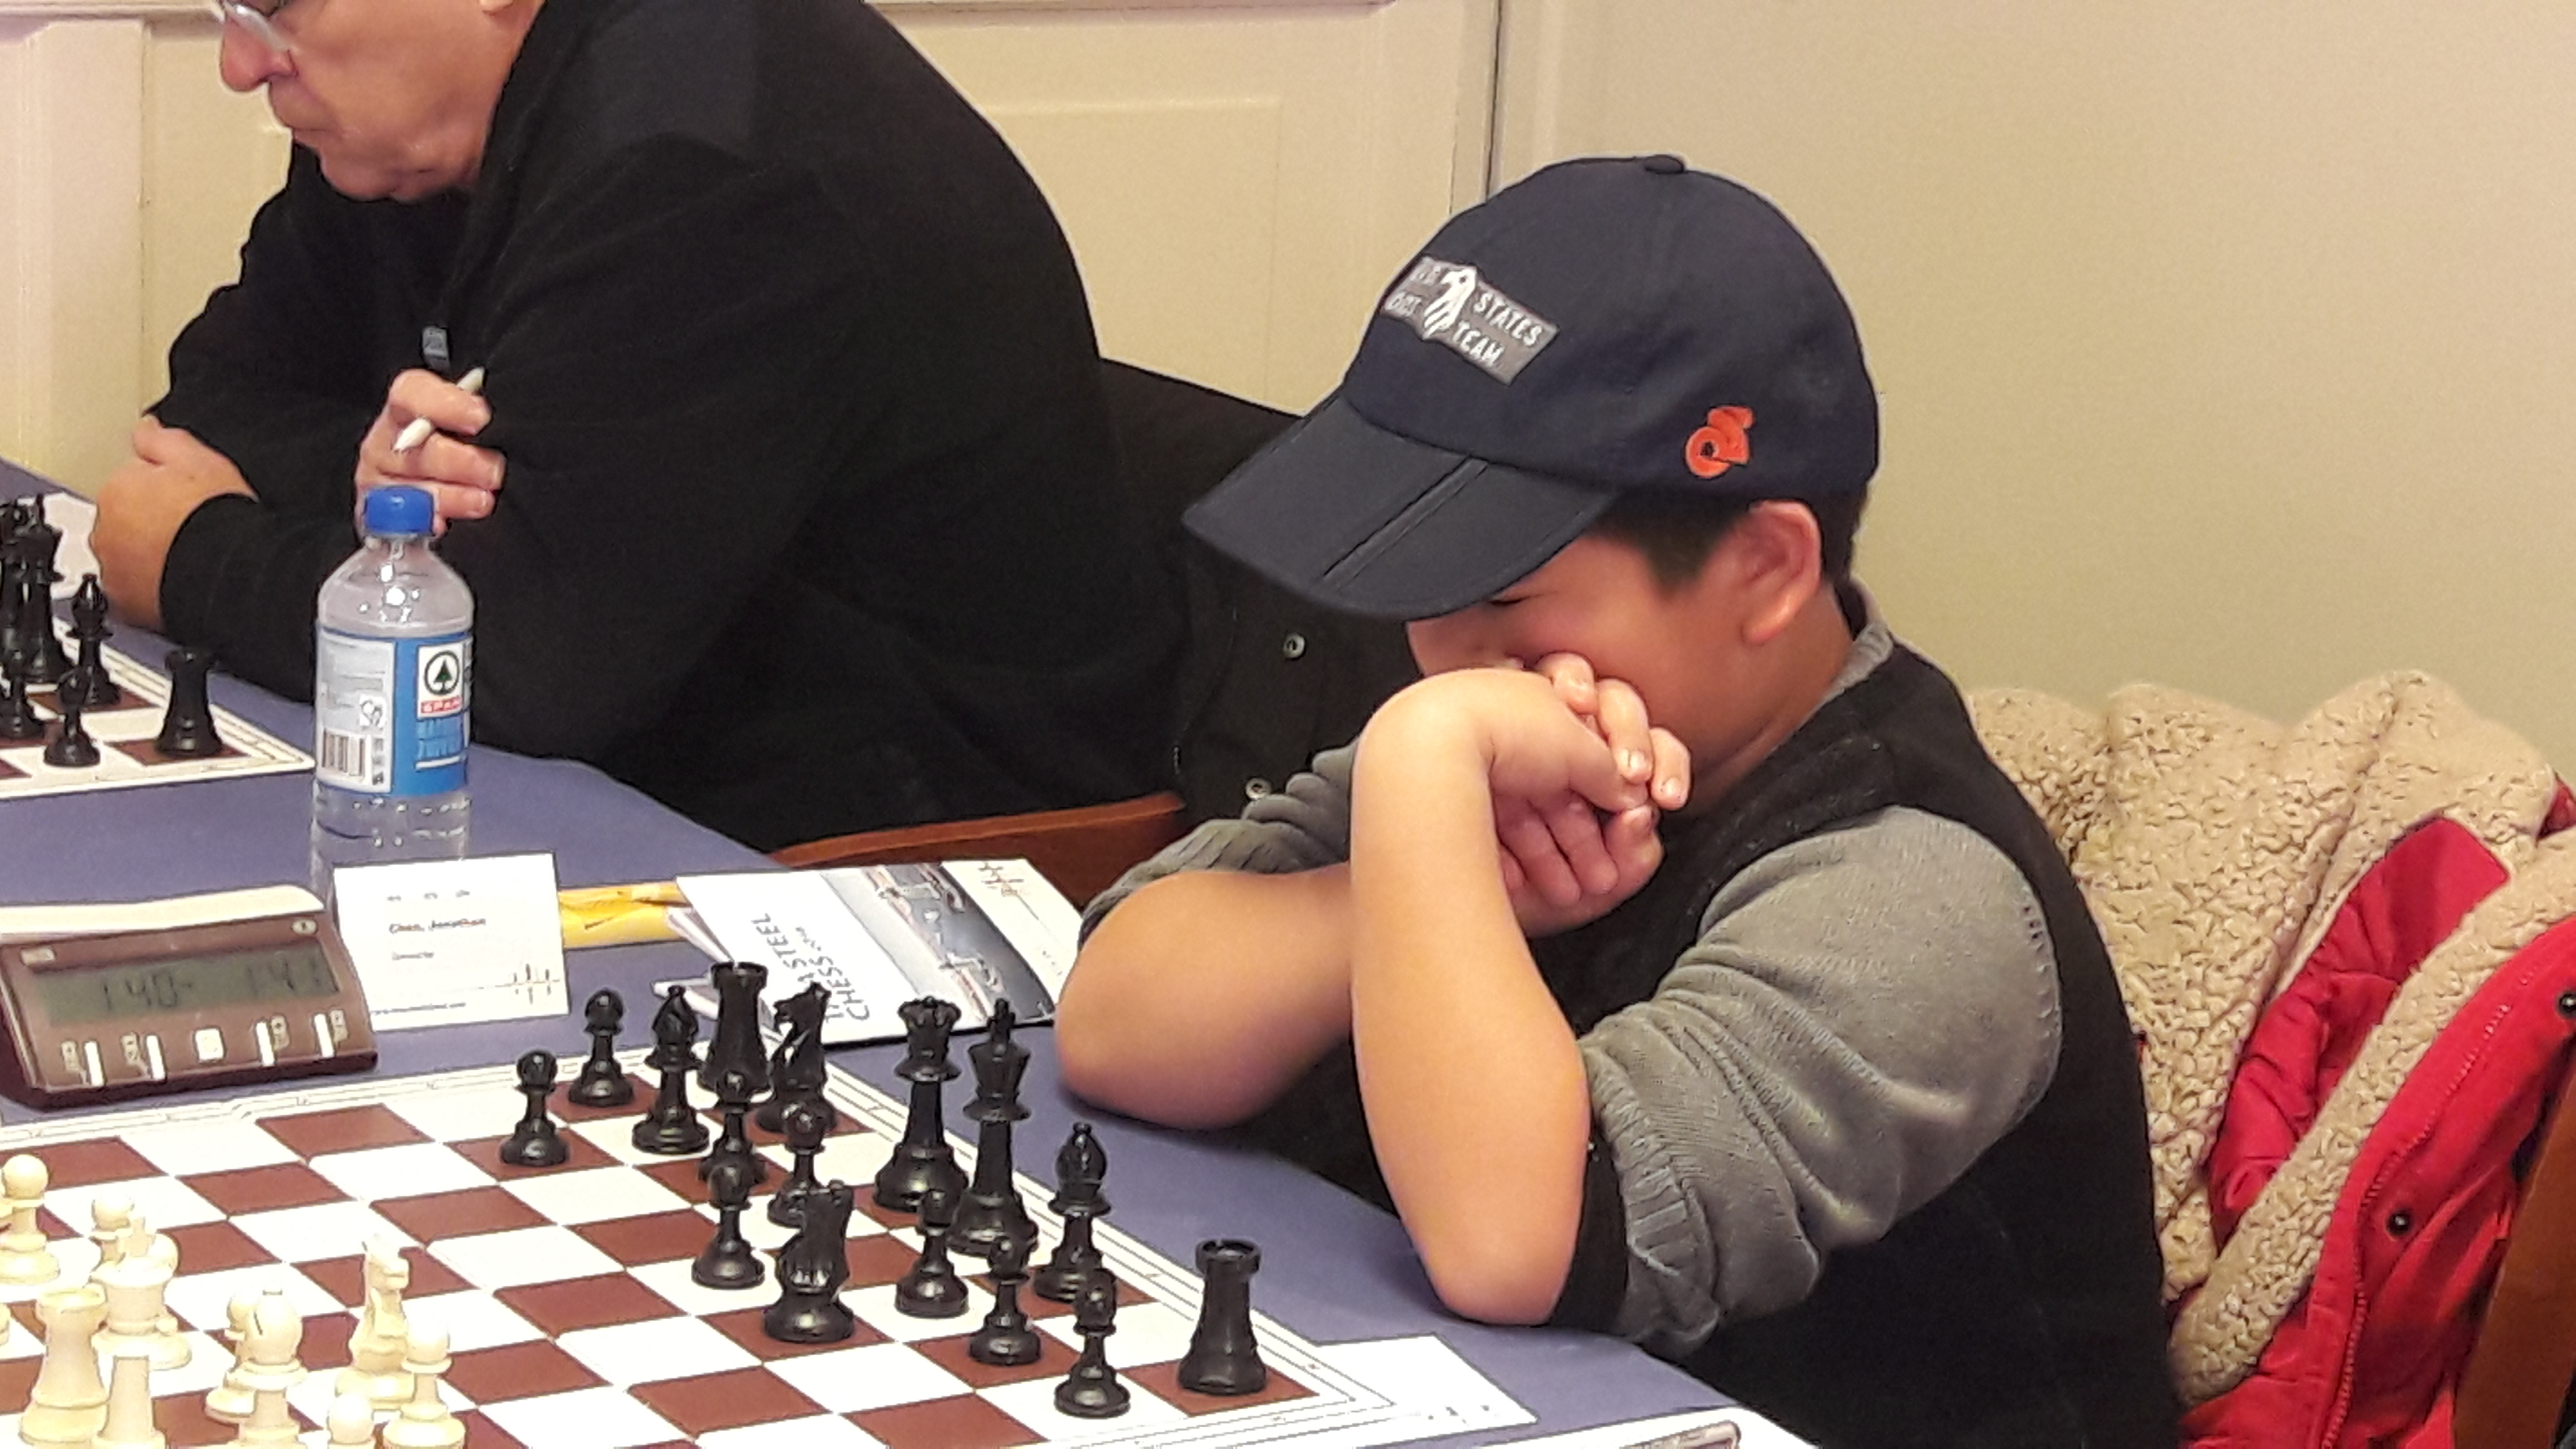 Carlsen: at Wijk, PDF, Chess